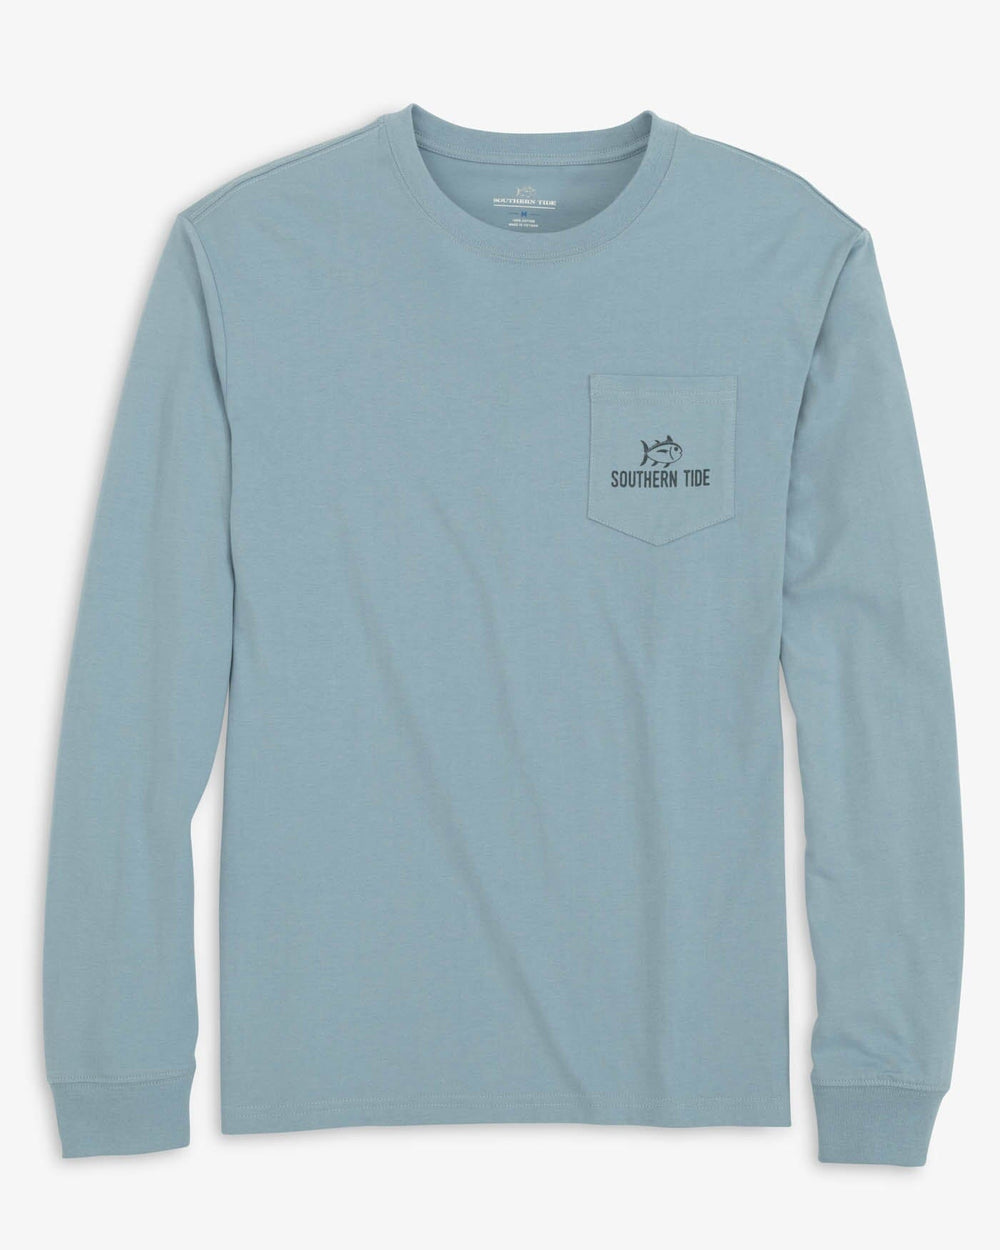 Mens Wave Drop Shoulder T-Shirt - Harbor Blue